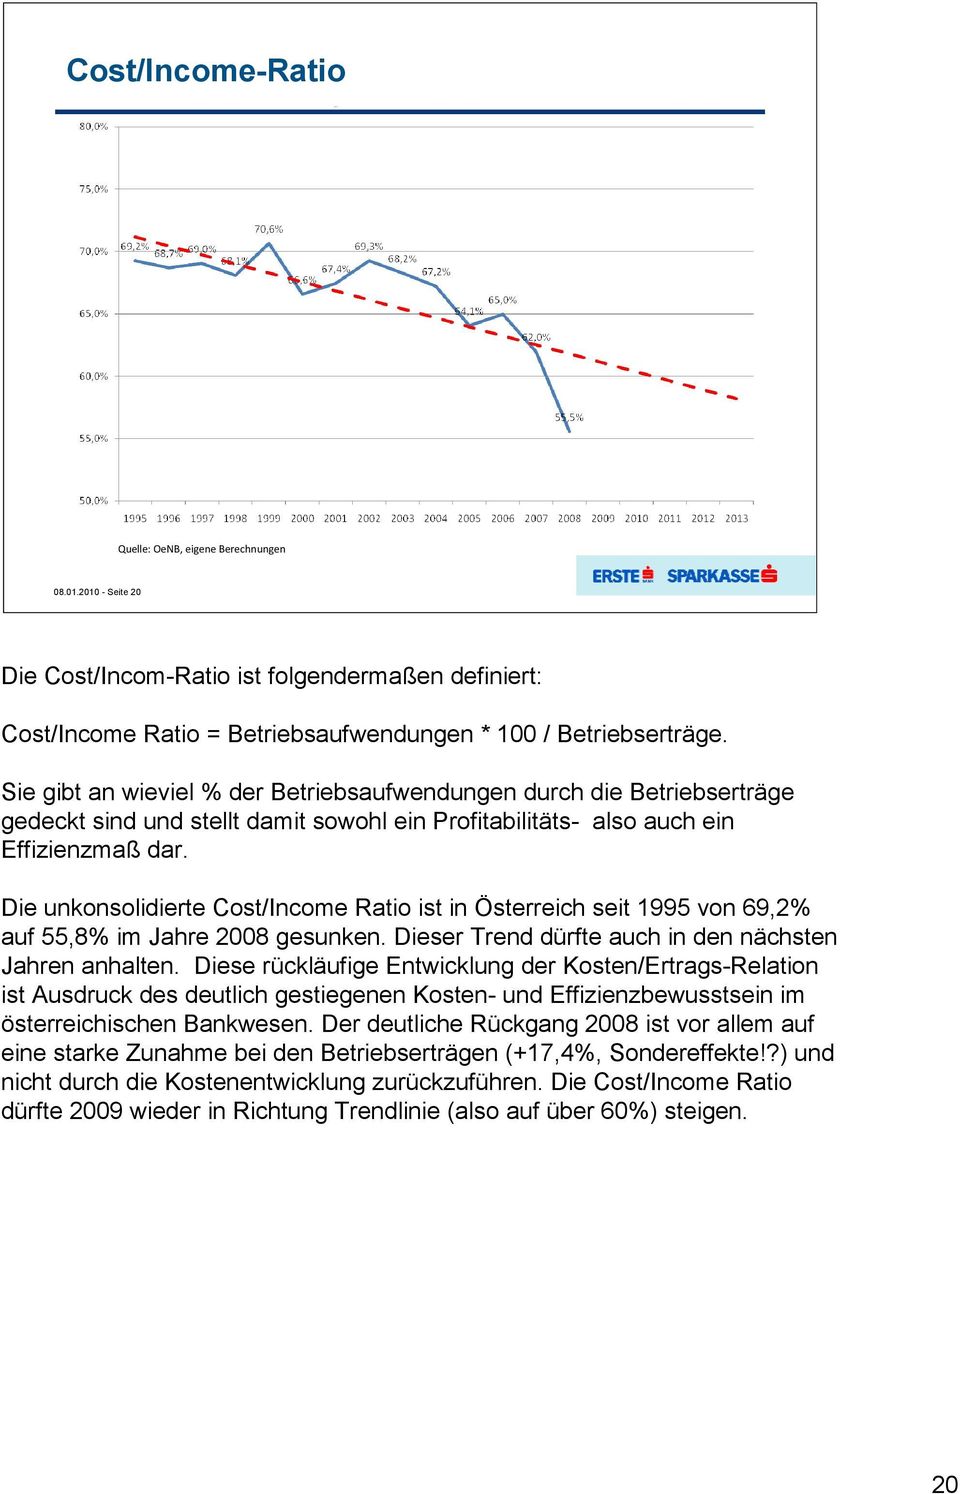 Die unkonsolidierte Cost/Income Ratio ist in Österreich seit 1995 von 69,2% auf 55,8% im Jahre 2008 gesunken. Dieser Trend dürfte auch in den nächsten Jahren anhalten.